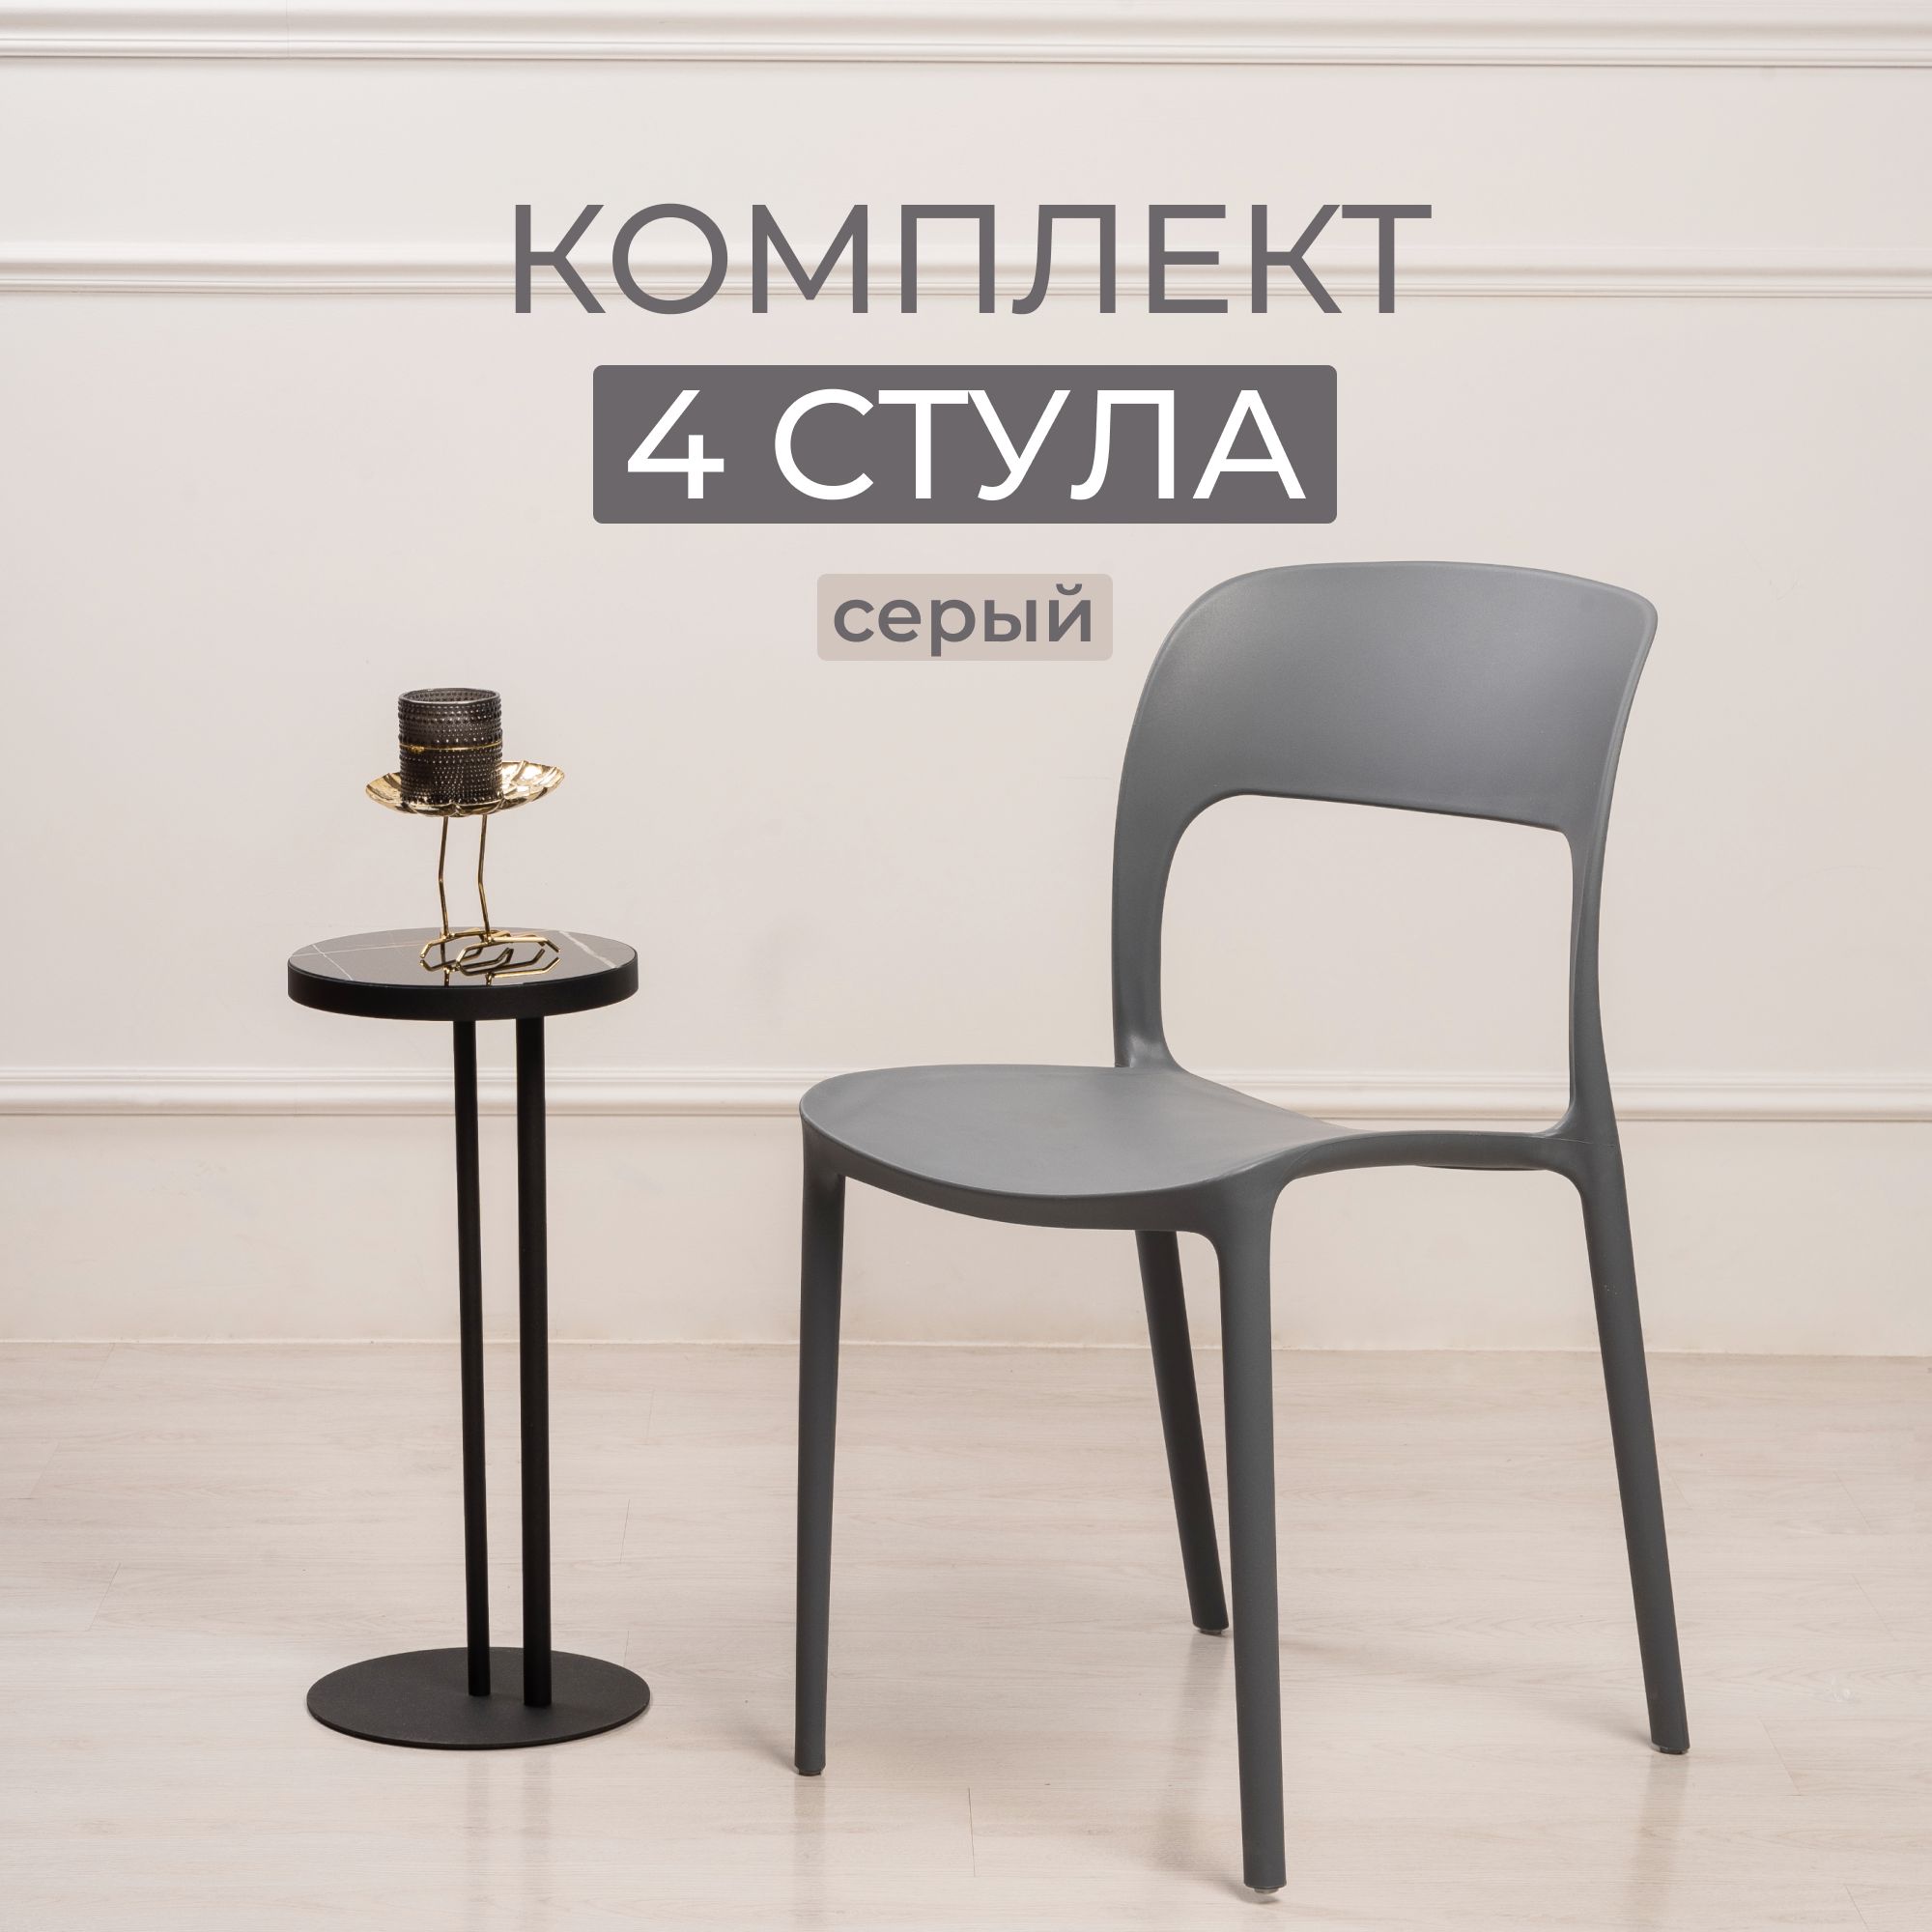 Комплект стульев для кухни, столовой и улицы из 4 шт STEPP ECLIPSE PP0003G4 серый